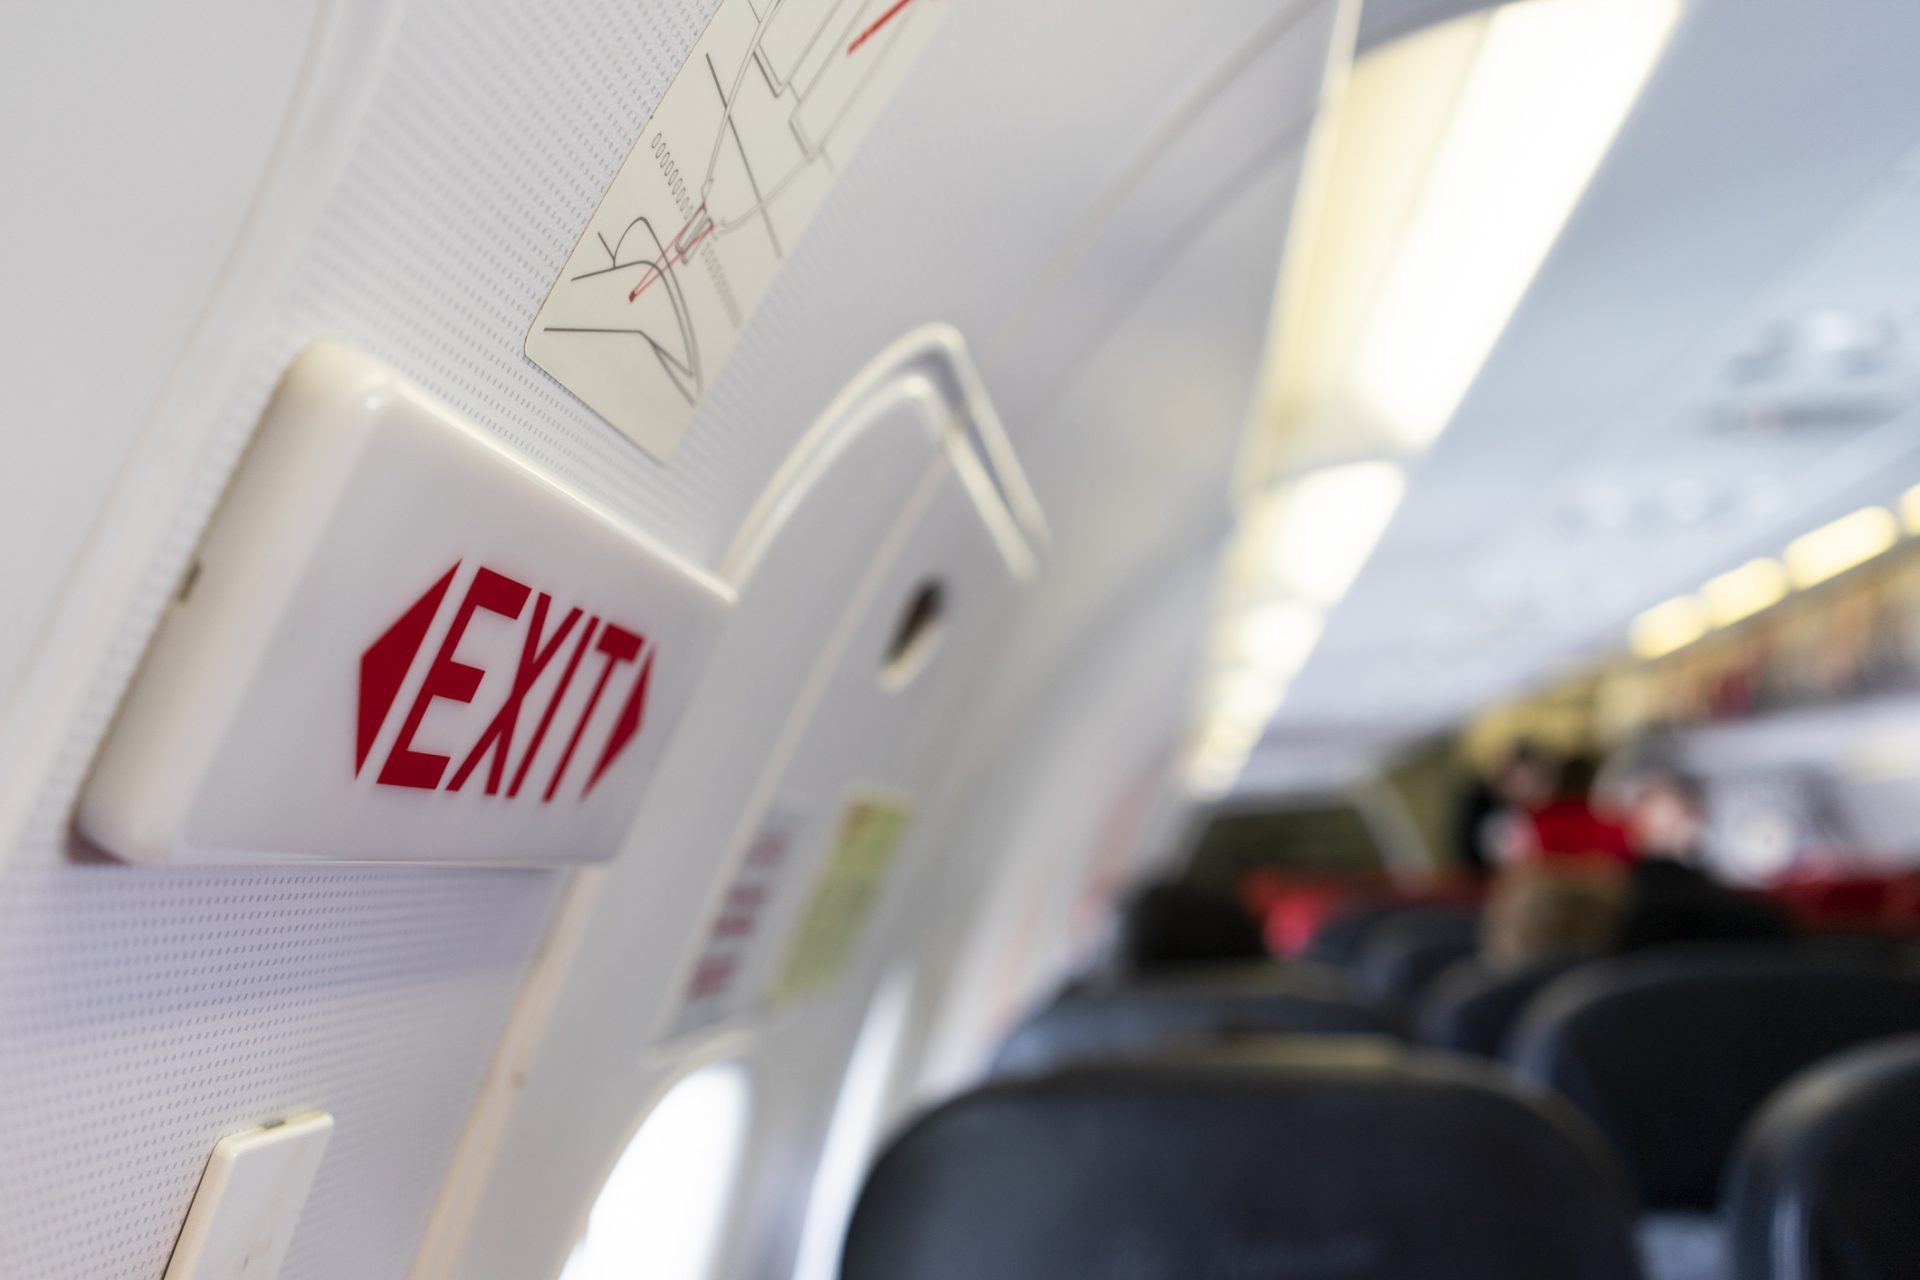 AeroMexico Flug 672: Passagier öffnet Notausgang und klettert auf Tragfläche